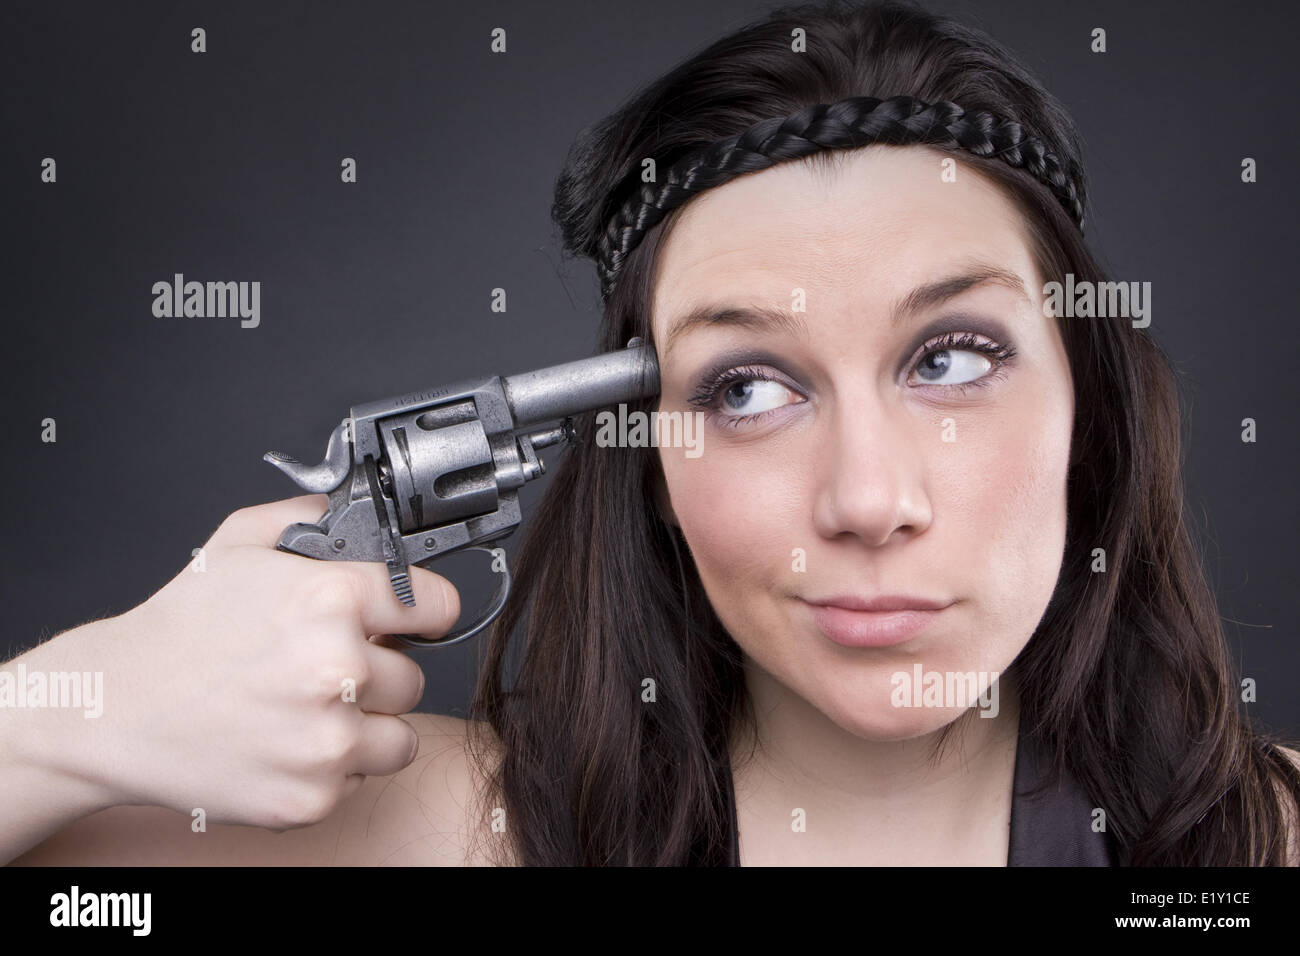 Gun At Womans Head Stock Photo